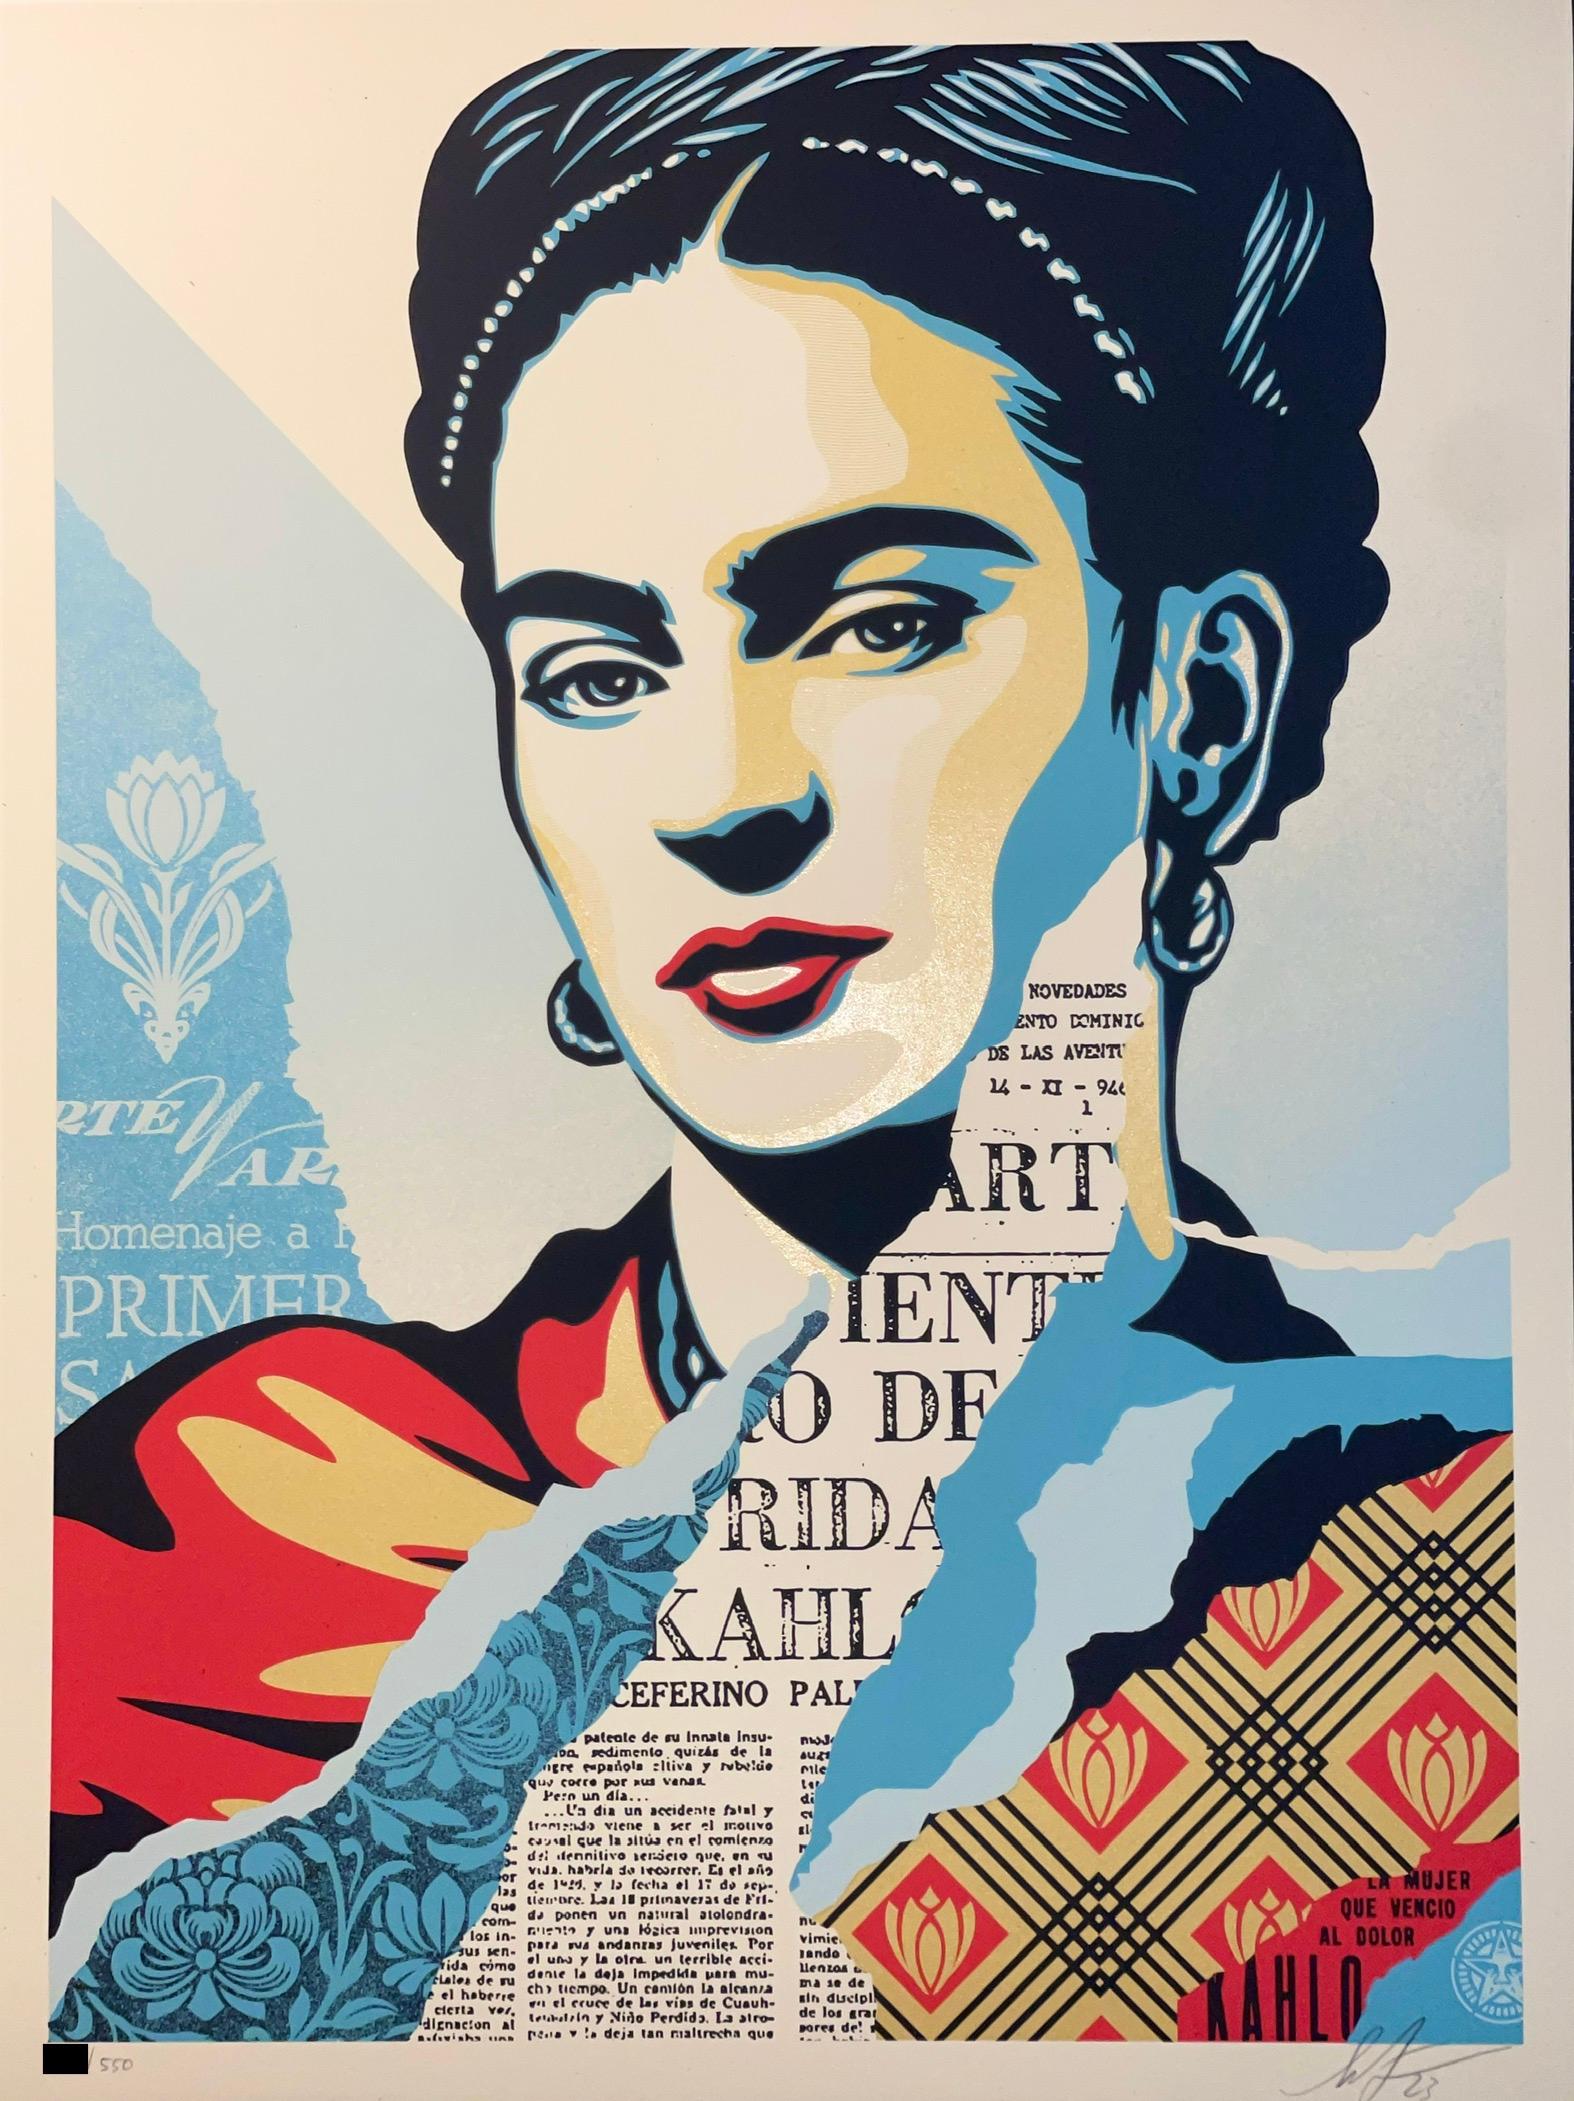 TITEL:
Shepard Fairey "Die Frau, die den Schmerz besiegte" Frida Kahlo Siebdruck Zeitgenössische Kunst
JAHR:
2023
KLASSIFIZIERUNG:
Limitierte Auflage
TYP MEDIUM:
Drucken
MITTEL/MATERIALIEN:
Fine Art Cream Speckletone Papier mit goldenen